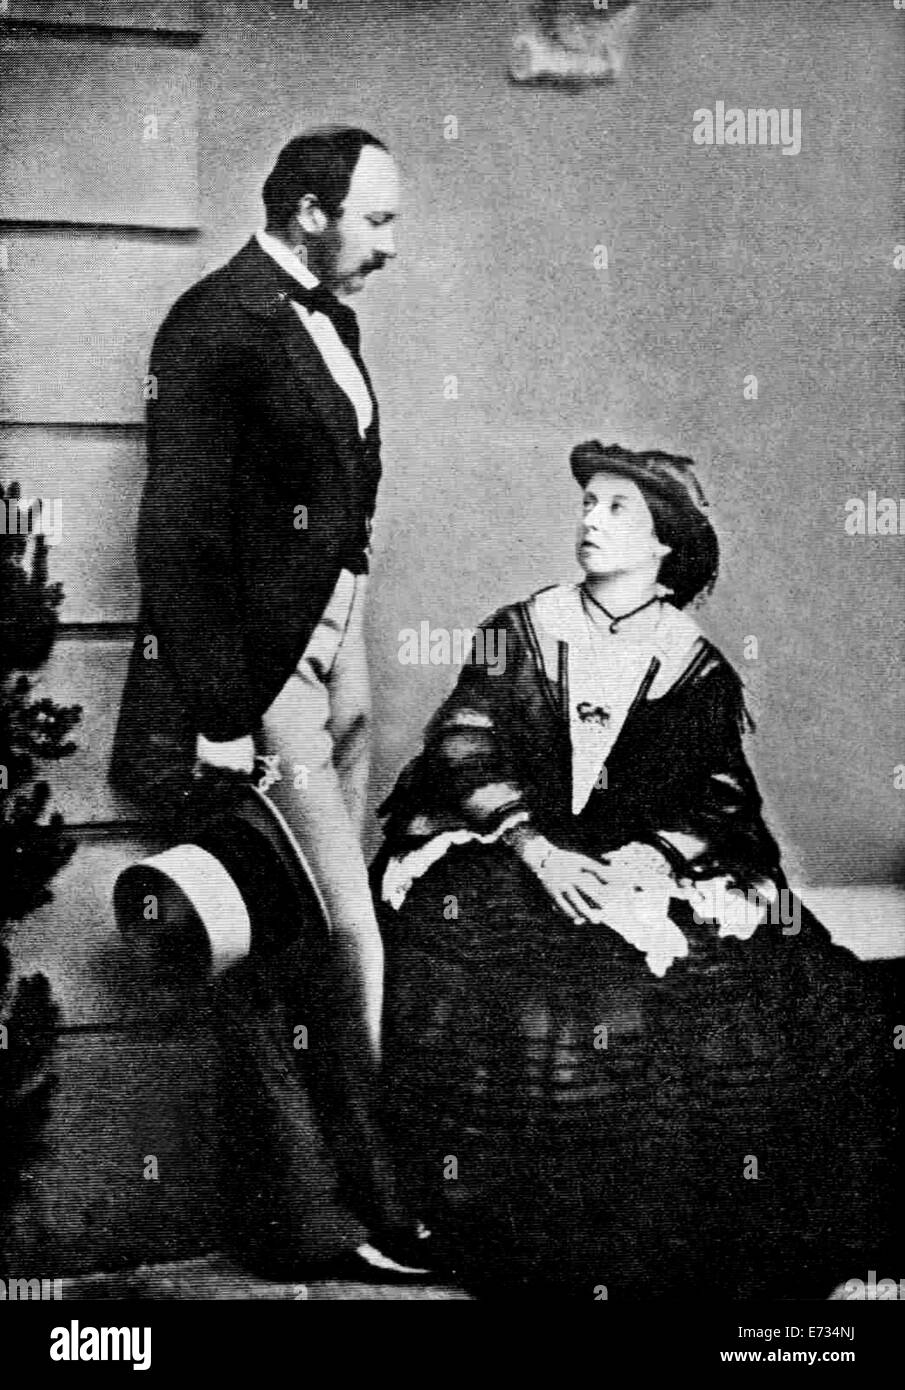 Prince Albert mann Consort und Königin Victoria im Jahr 1860. Aus den Archiven von Presse Portrait Service (ehemals Presse Portrait Bureau) Stockfoto